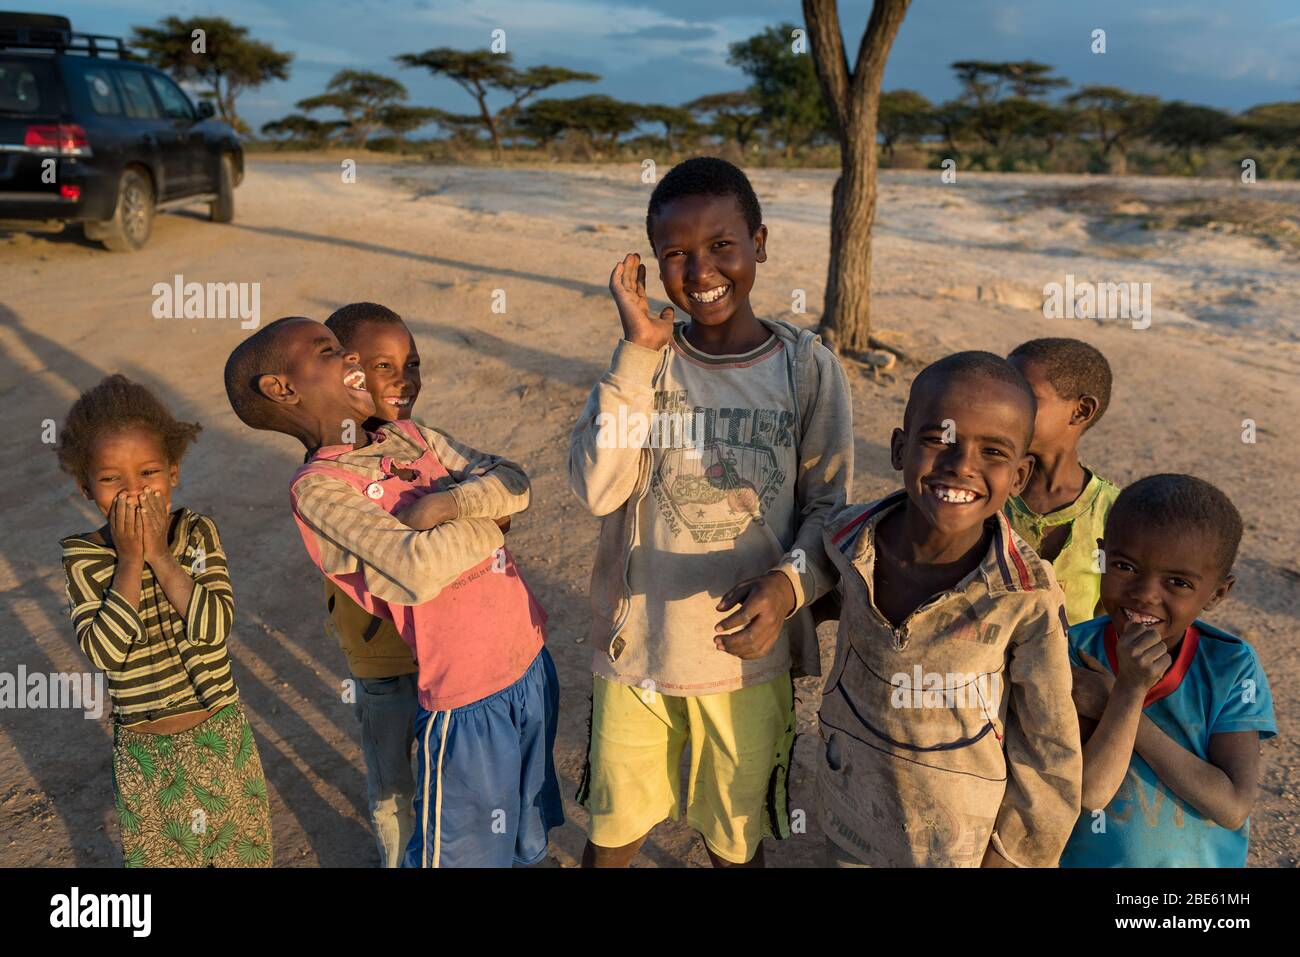 Les enfants rient hilarieusement au coucher du soleil, membre du groupe ethnique Oromo, dans le parc national d'Abijata-Shalla, vallée de la rivière Omo, Ethiopie. Banque D'Images